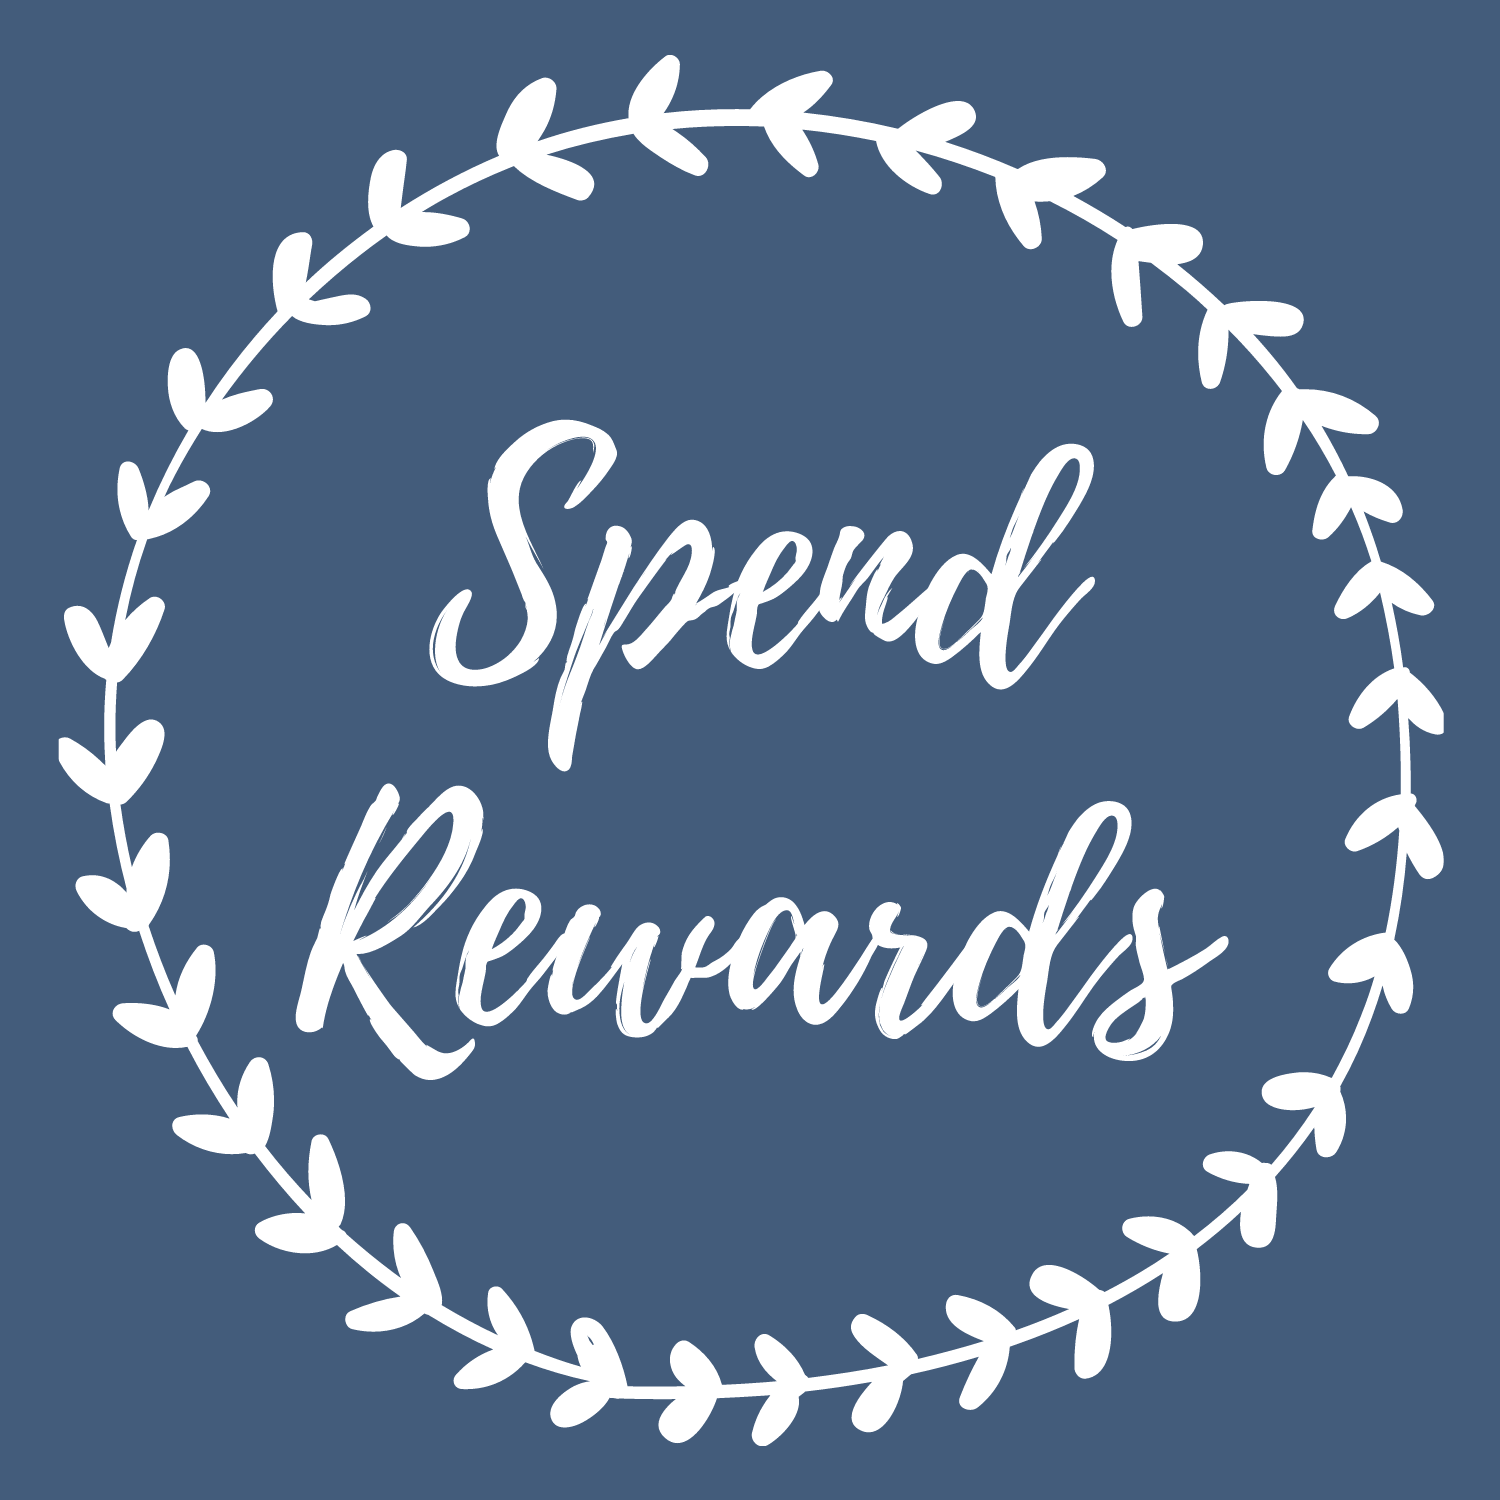 spend rewards